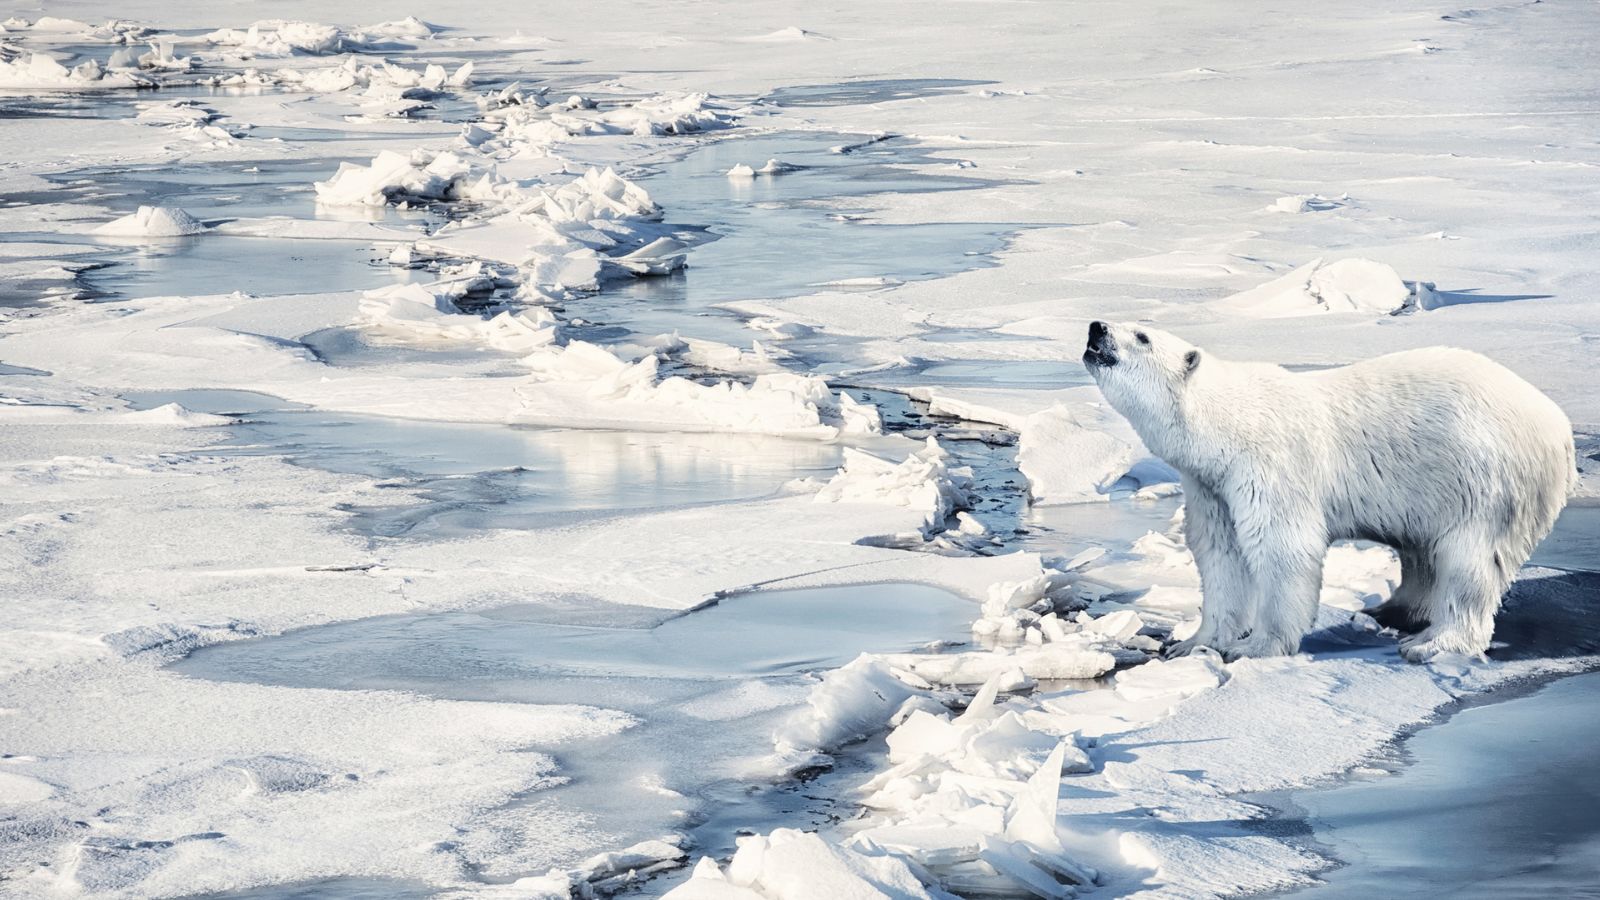 L’importanza dell'esperimento di ispessimento del ghiaccio marino nell'Artico condotto a Cambridge Bay